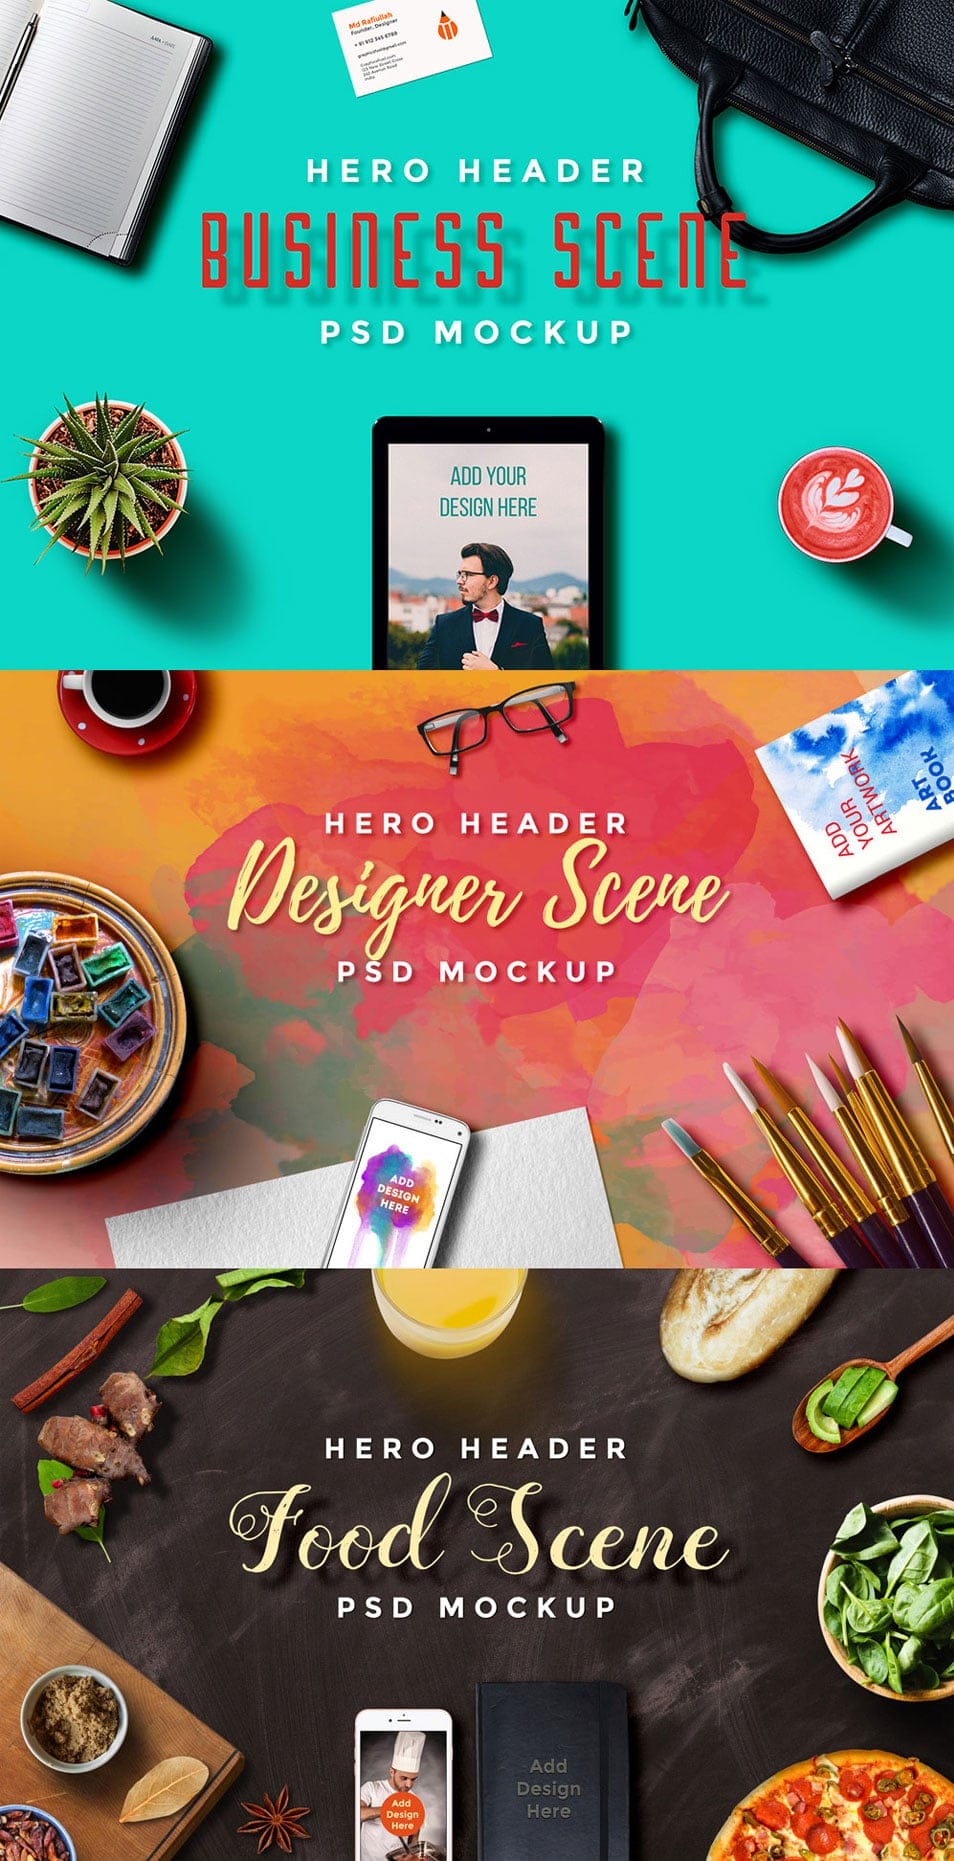 Hero Header Scene Mockup PSD Templates